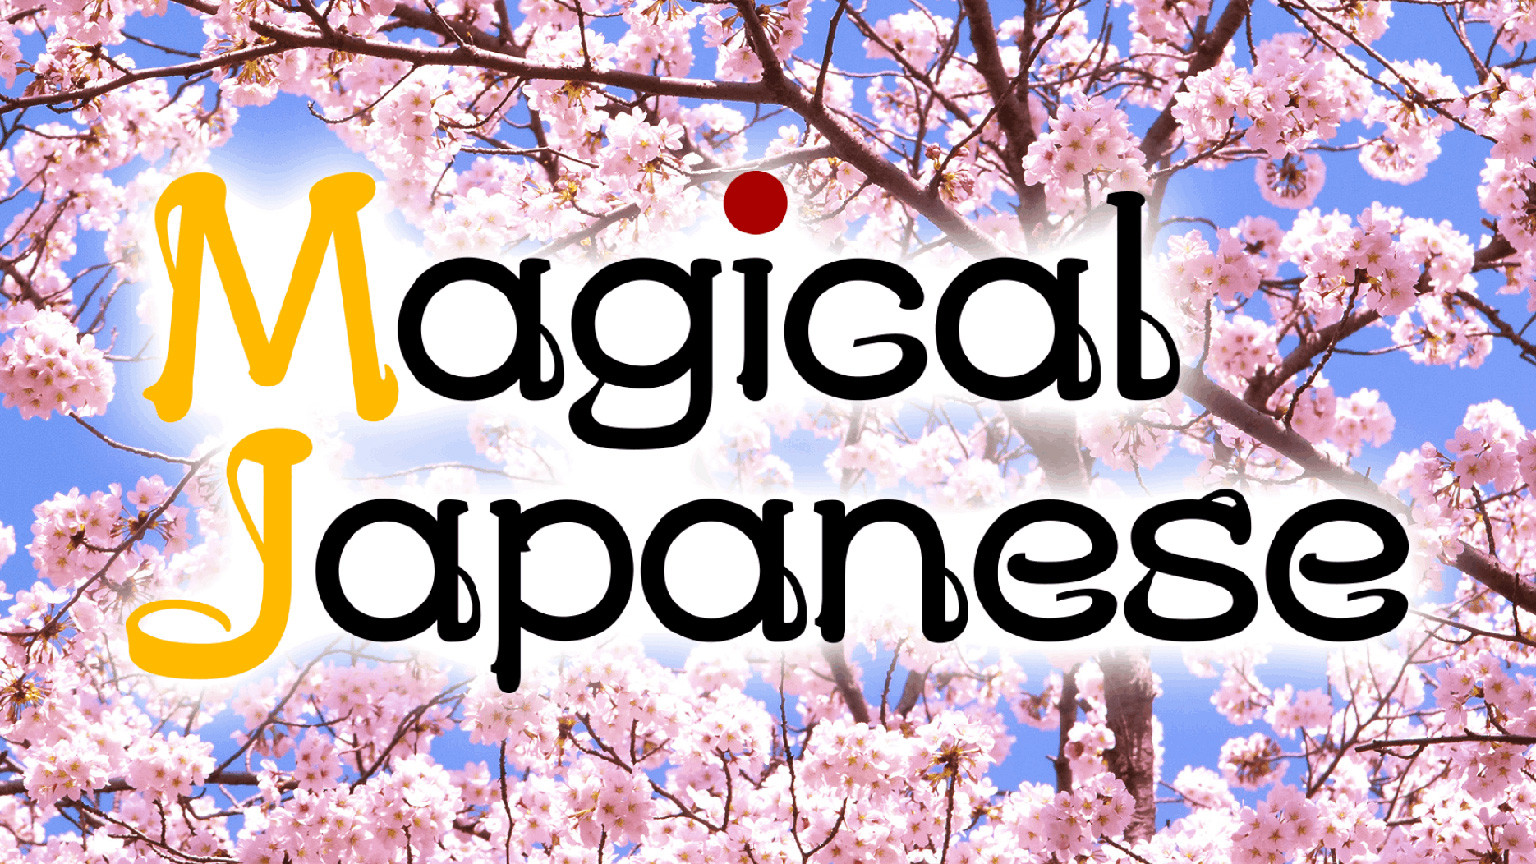 มนต์ขลังแห่งภาษาญี่ปุ่น
Magical Japanese